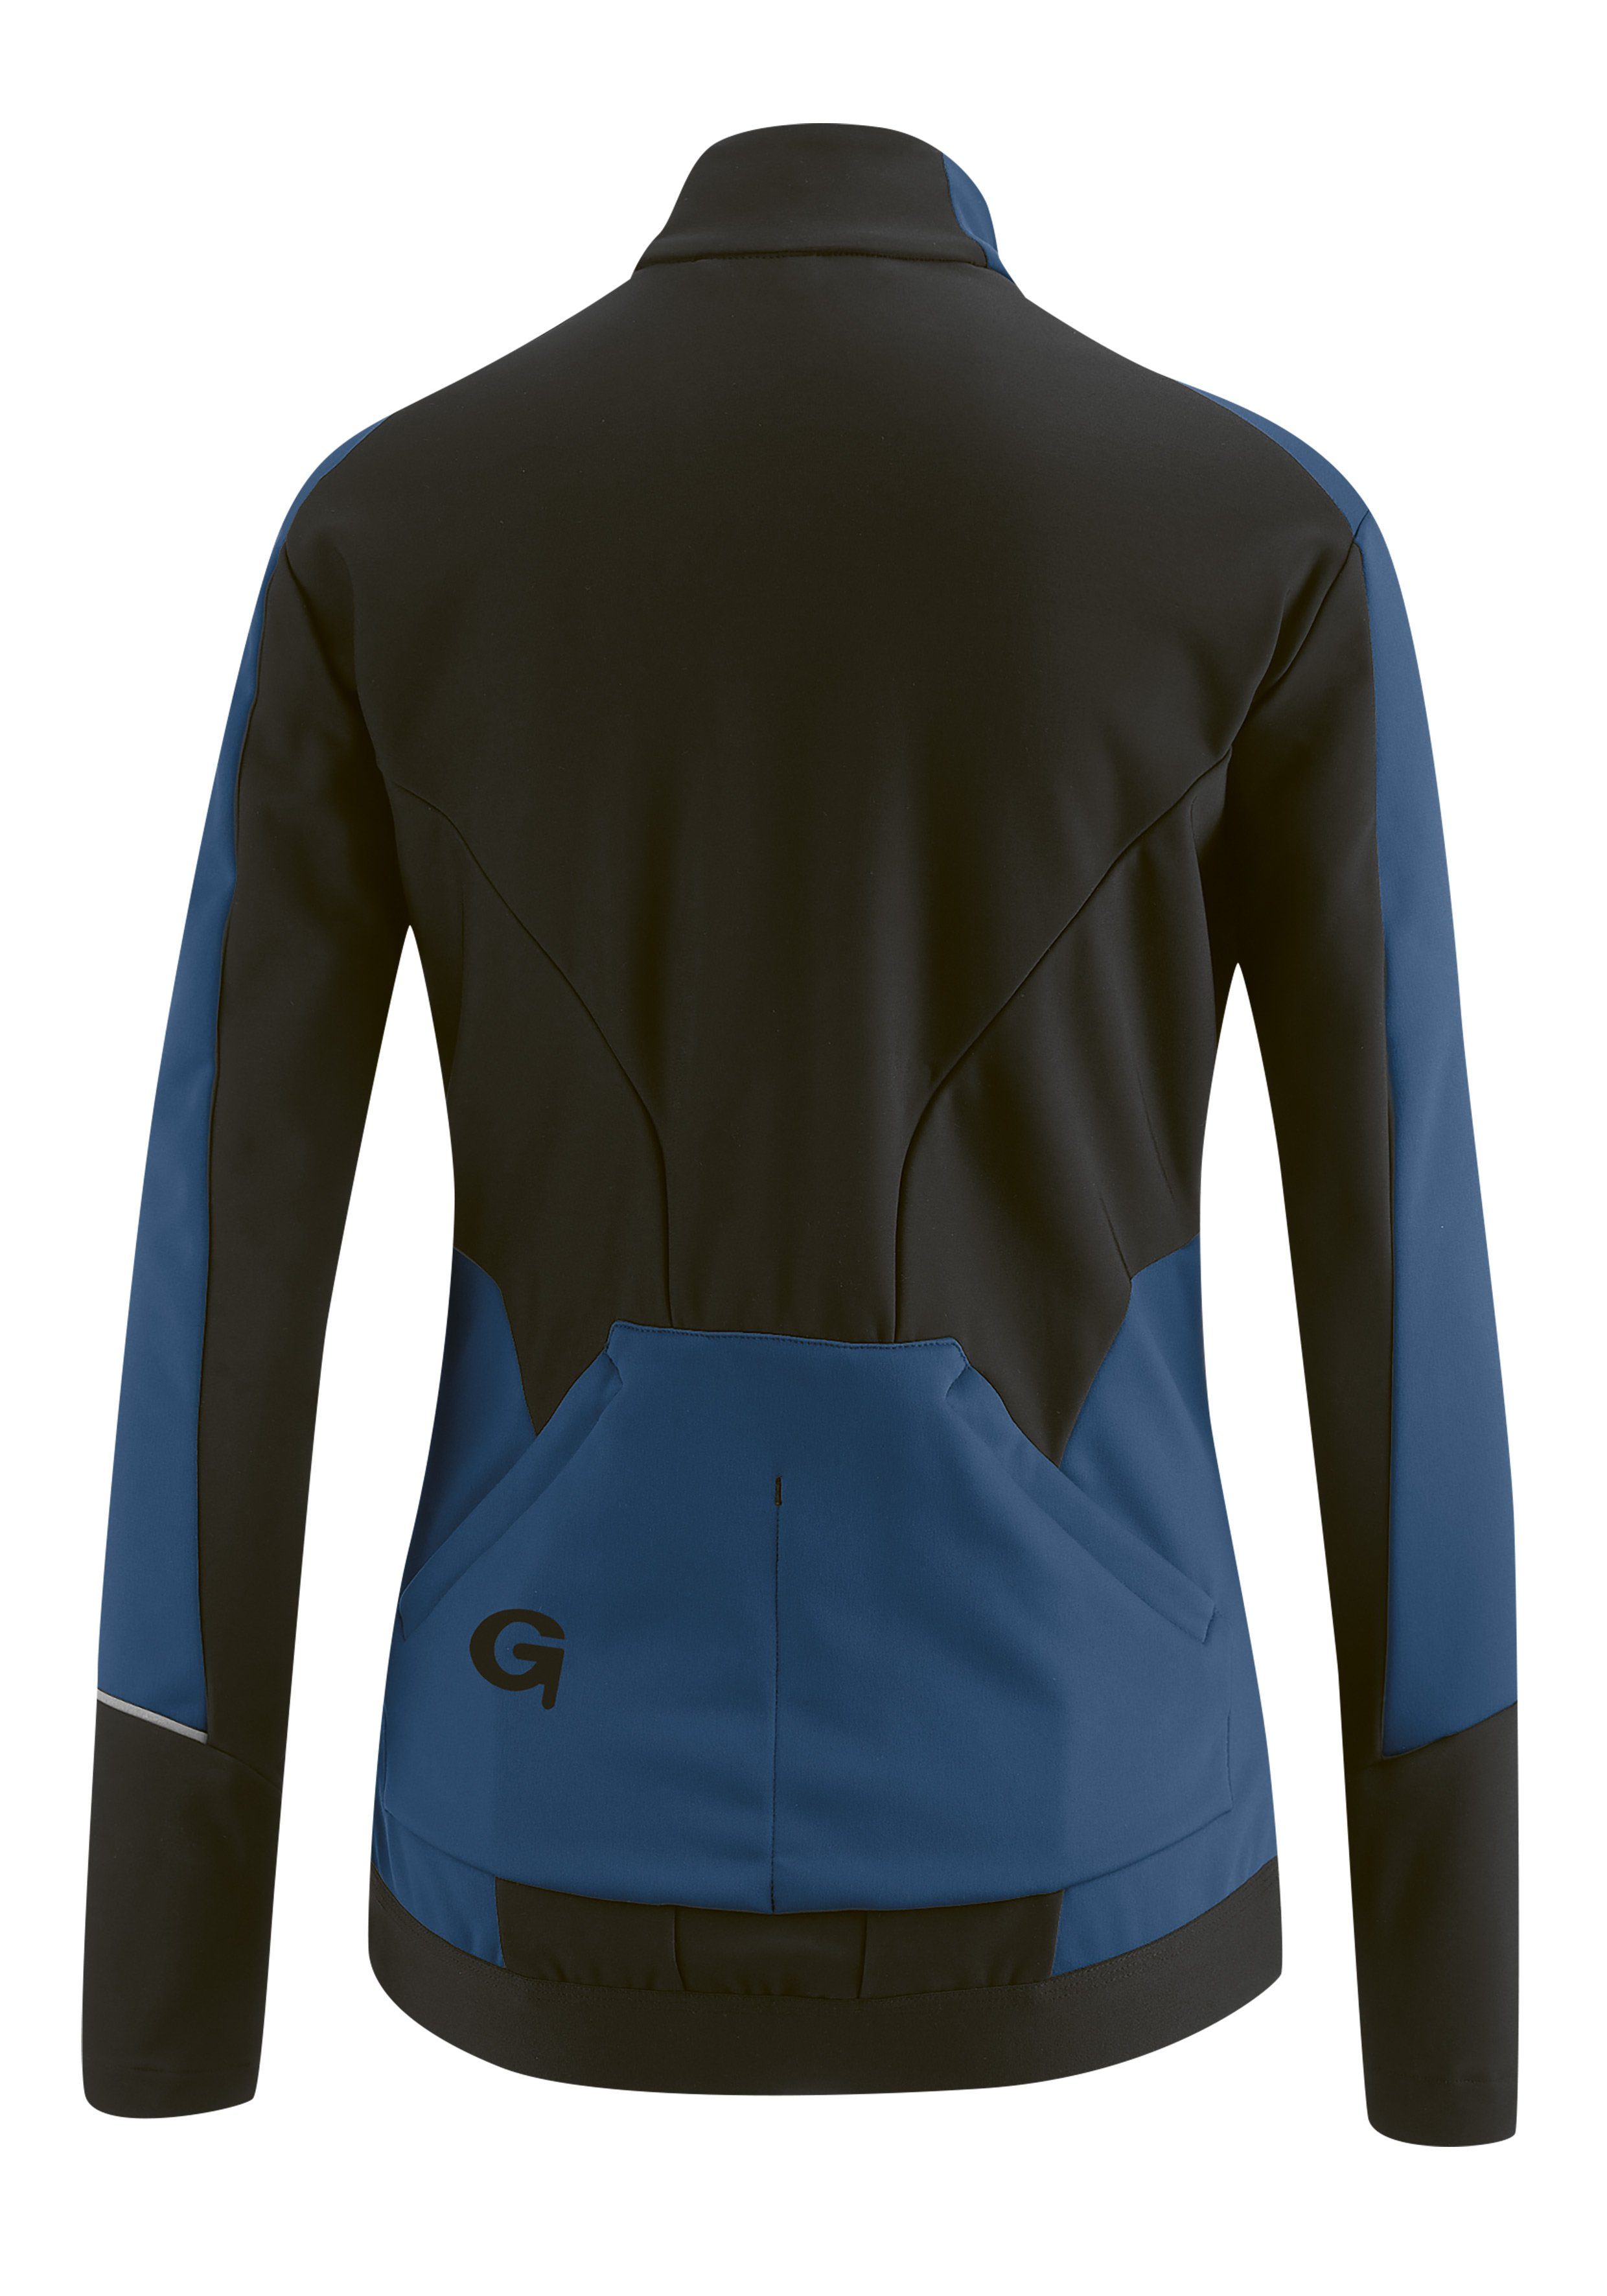 Softshell-Jacke, Gonso dunkelblau atmungsaktiv und wasserabweisend Windjacke FURIANI Damen Fahrradjacke